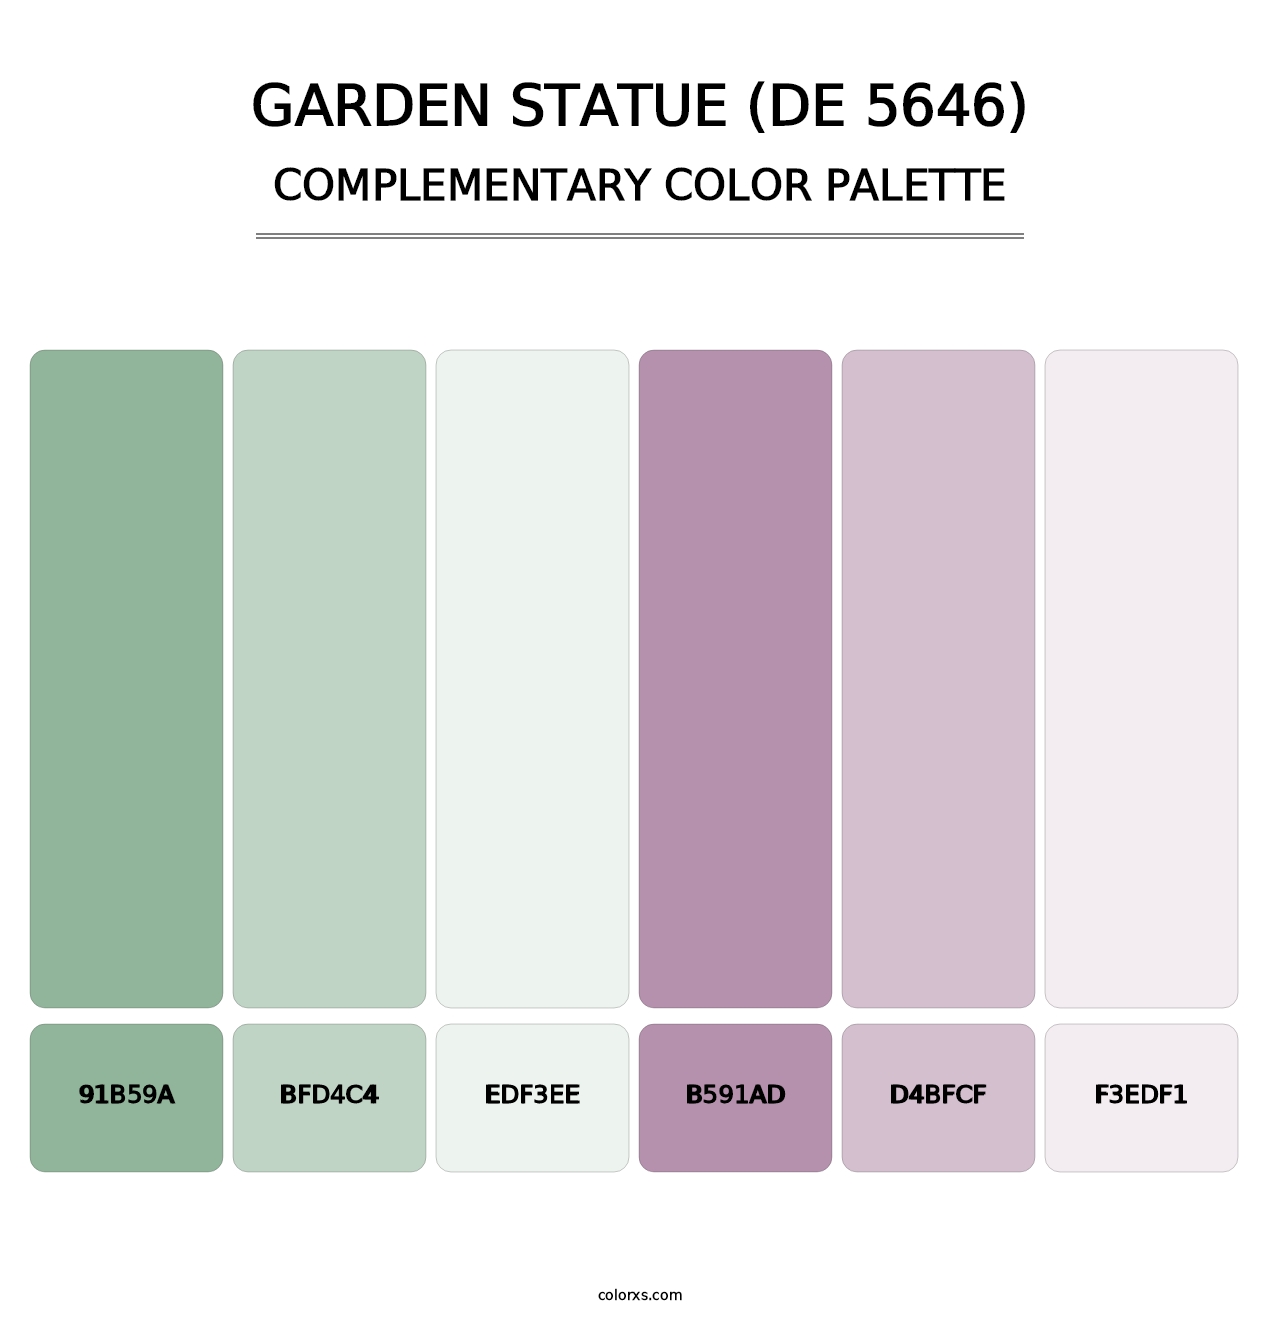 Garden Statue (DE 5646) - Complementary Color Palette